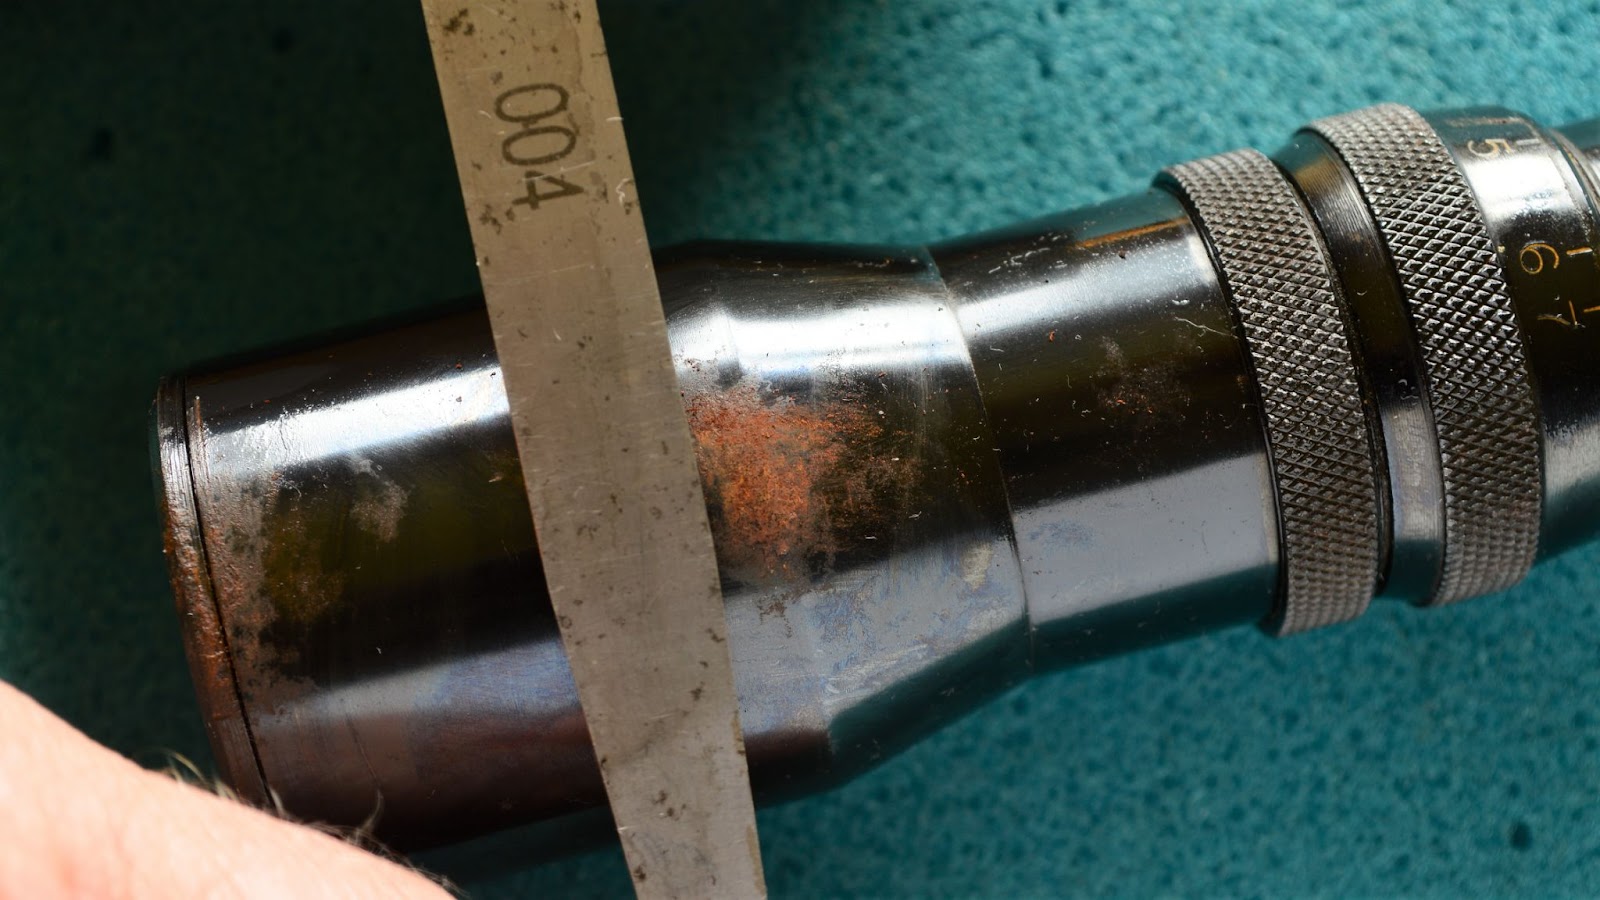 using a gauge blade as a scraper